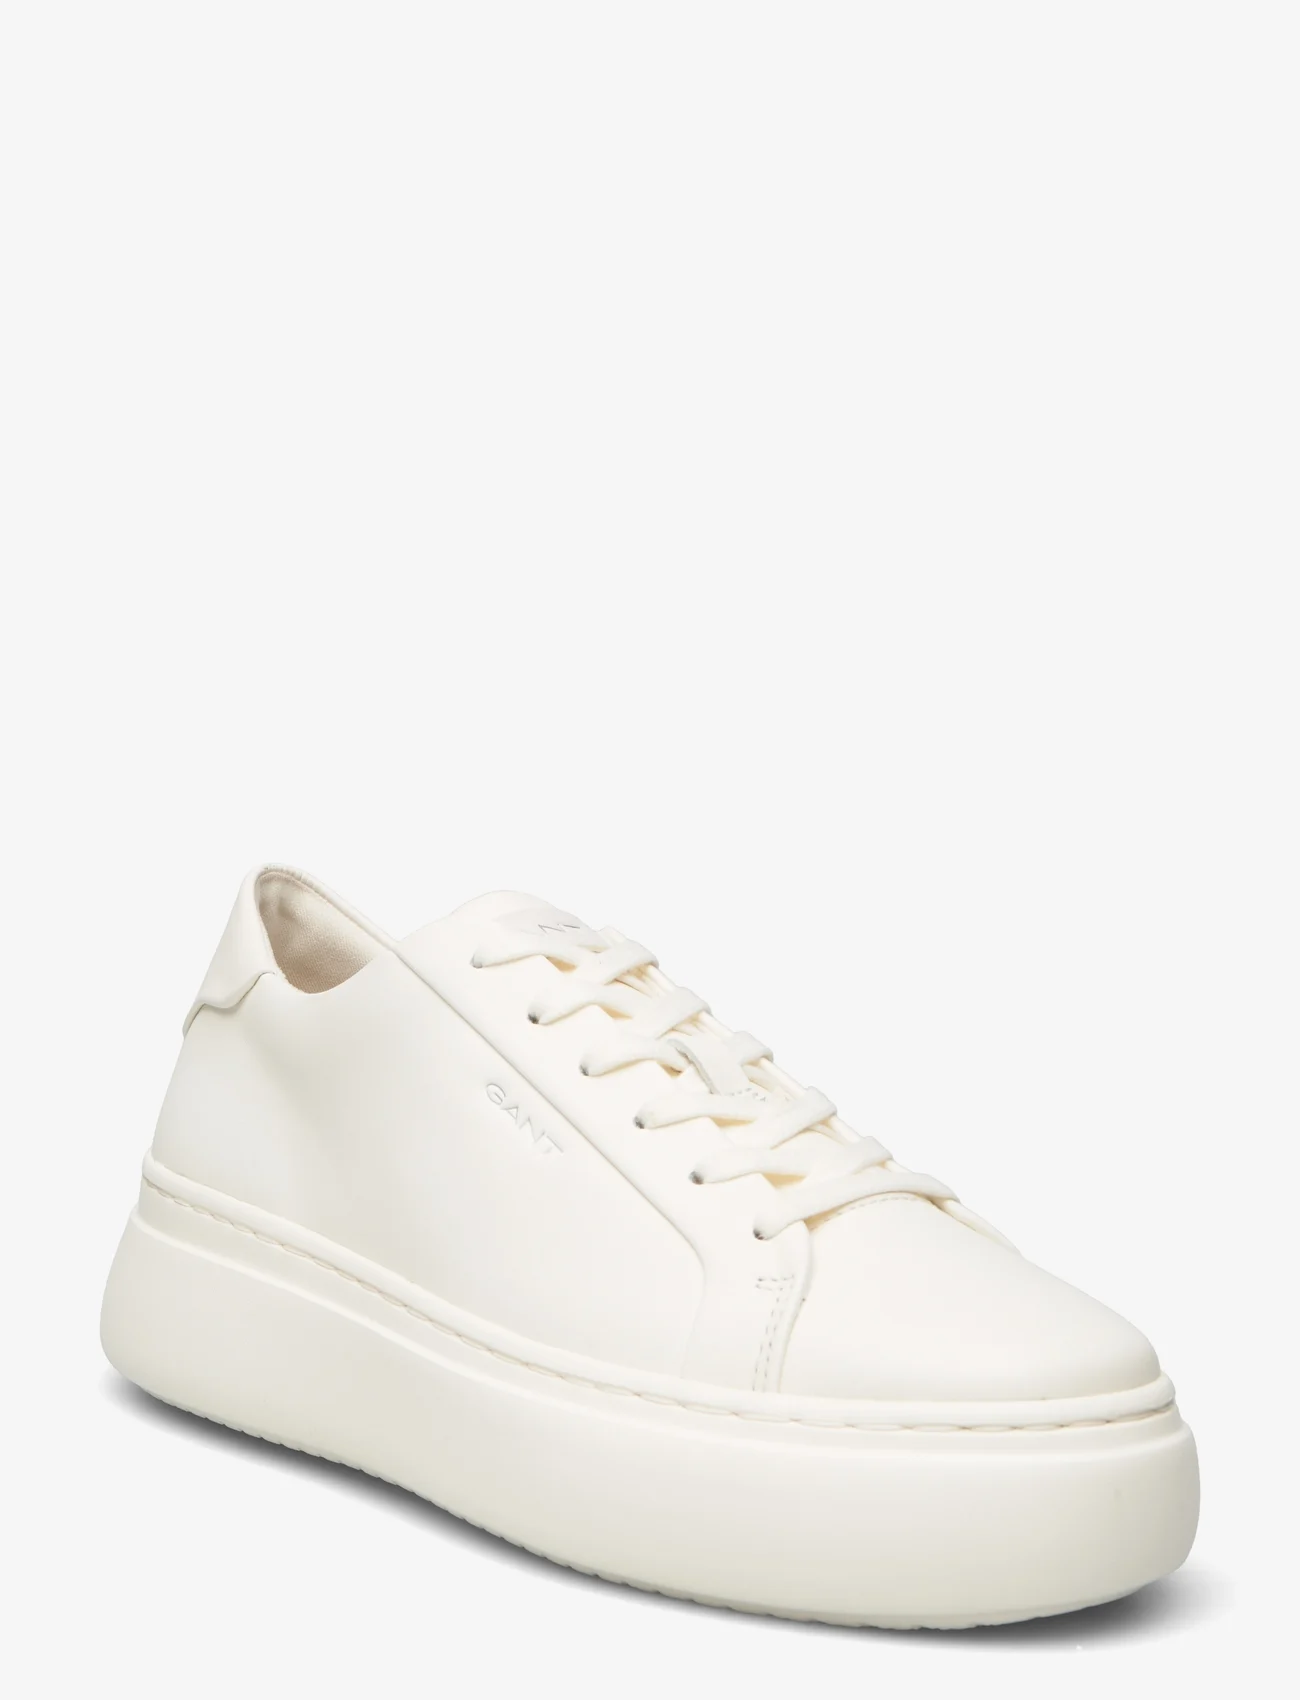 GANT - Jennise Sneaker - lage sneakers - white - 0